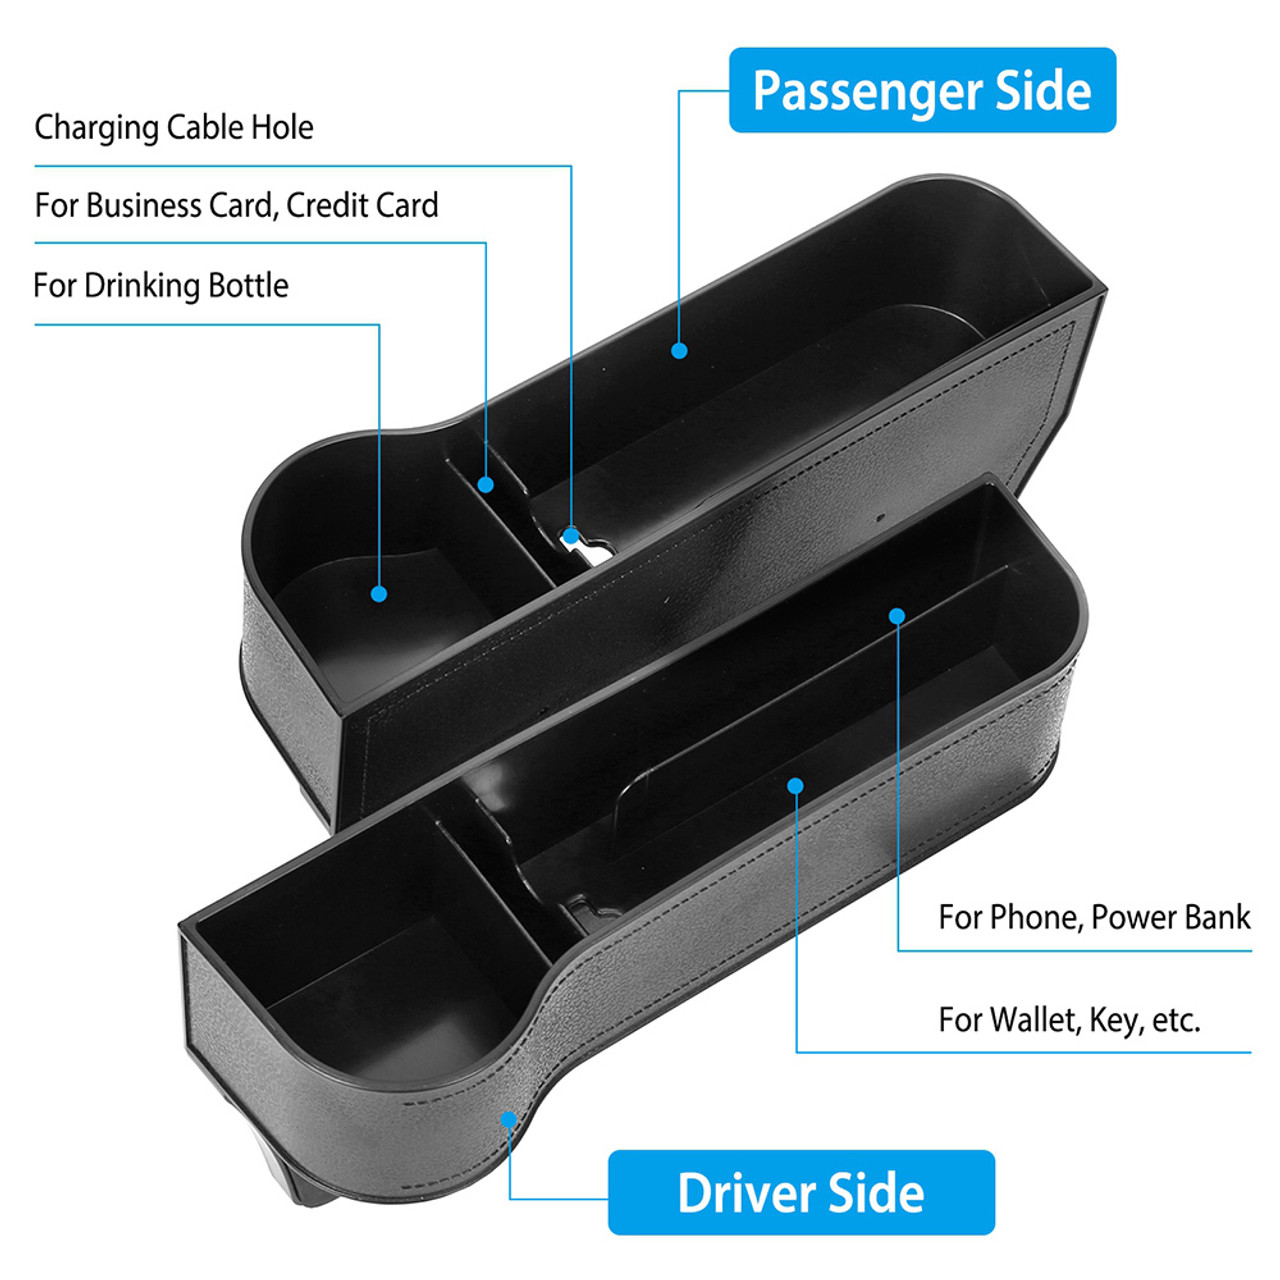 Car Seat Gap Organizer & Storage Boxes (1-Pair) product image